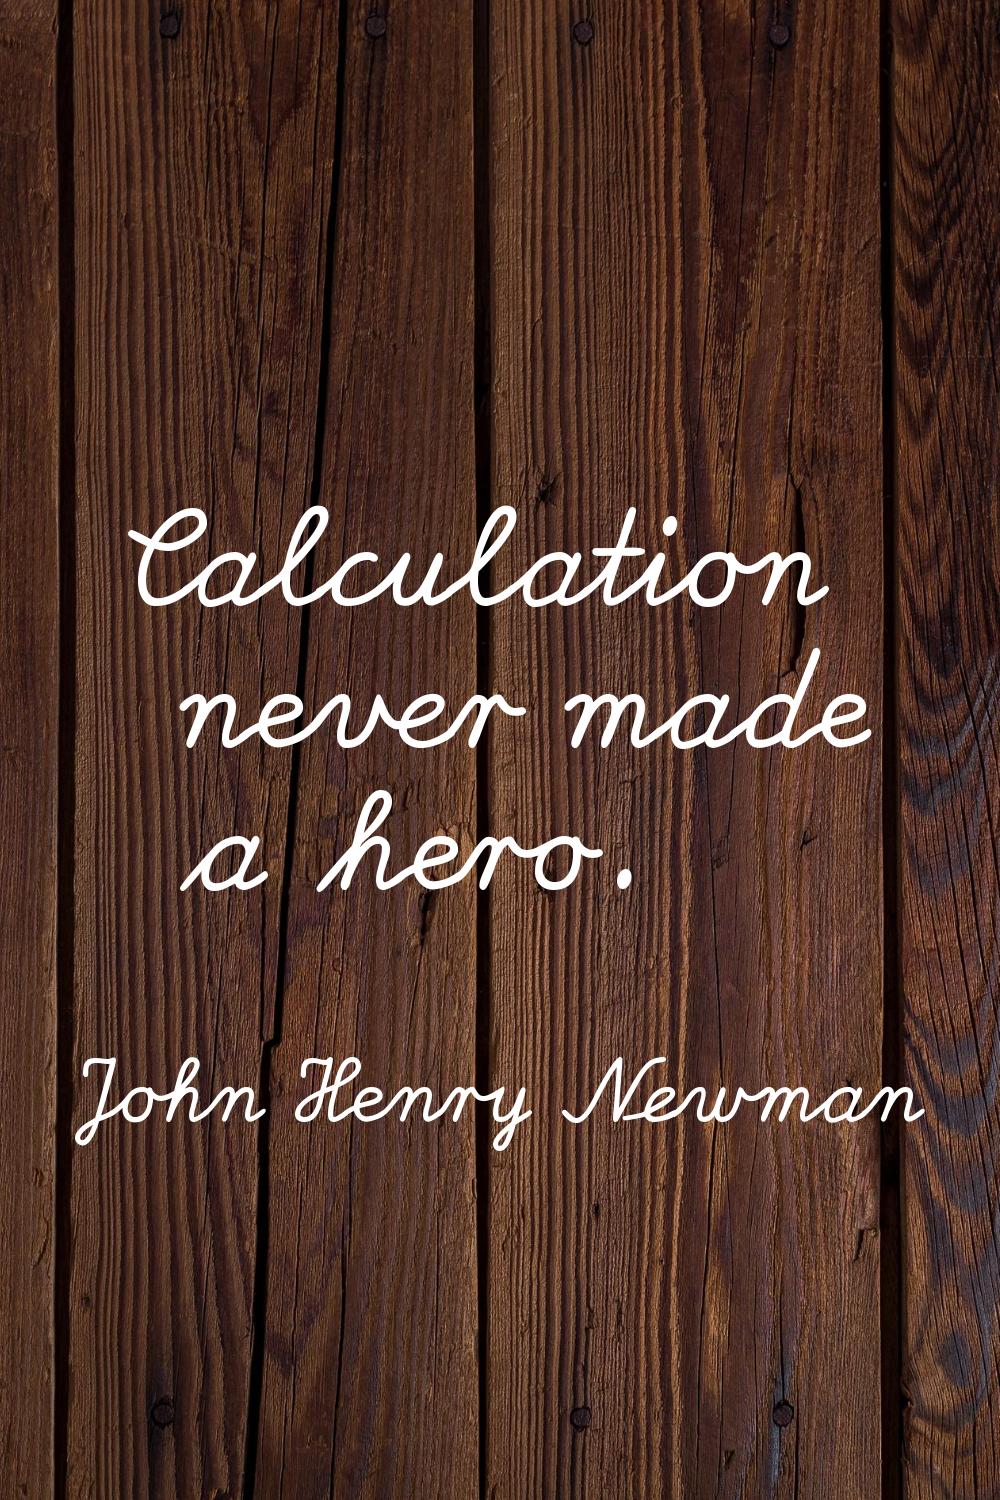 Calculation never made a hero.